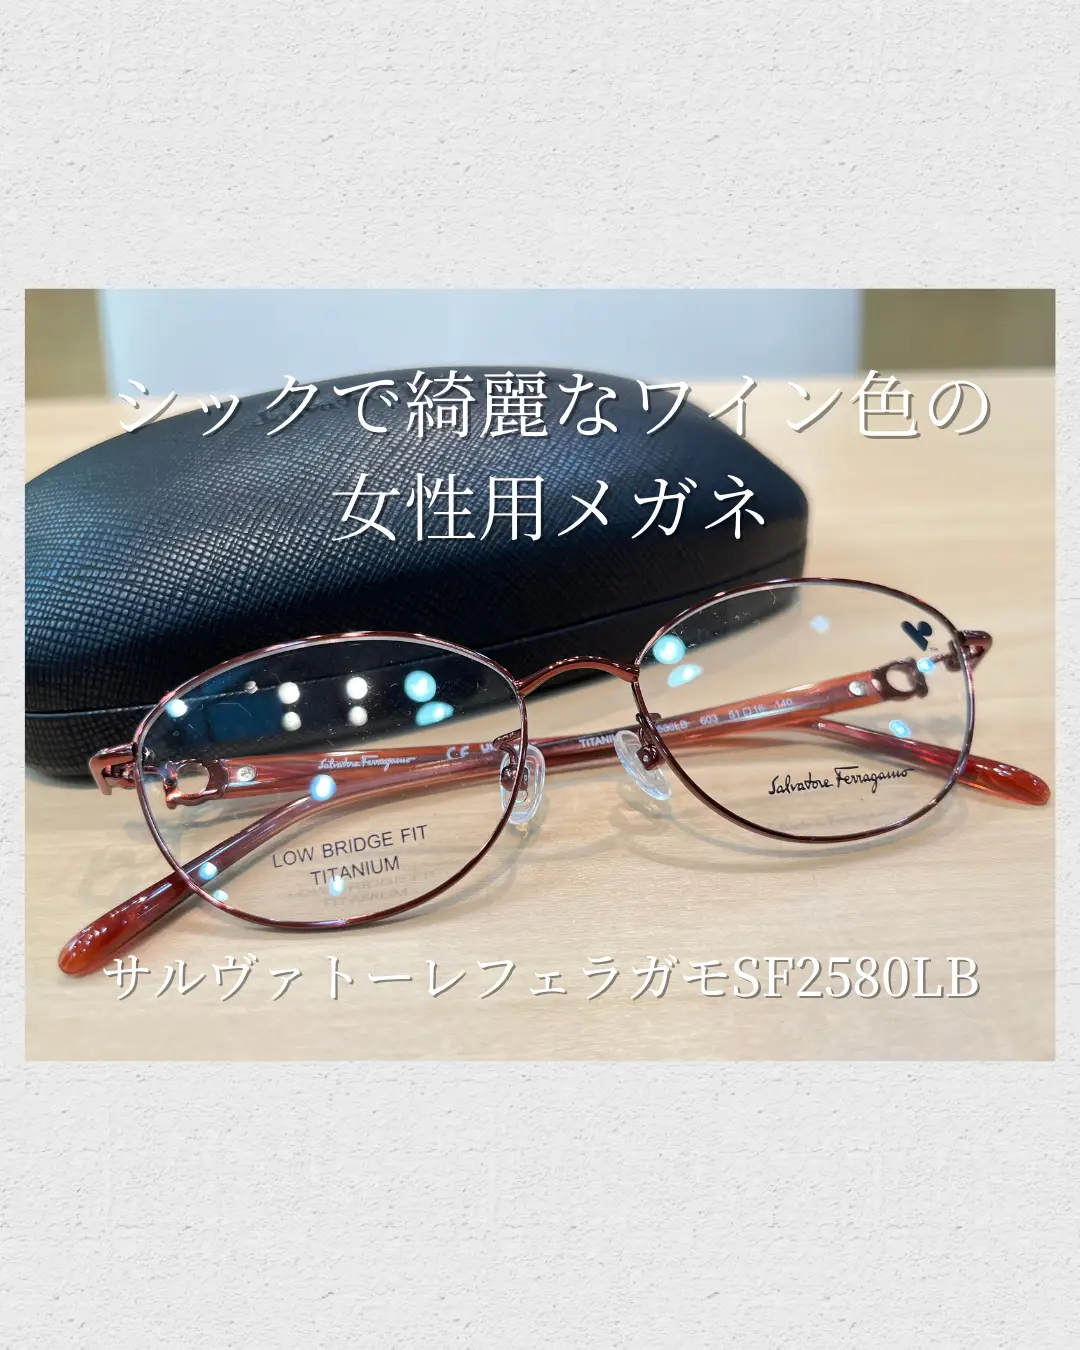 FERRAGAMO フェラガモ 眼鏡 メガネ SF2580LB-603-51岡愛子